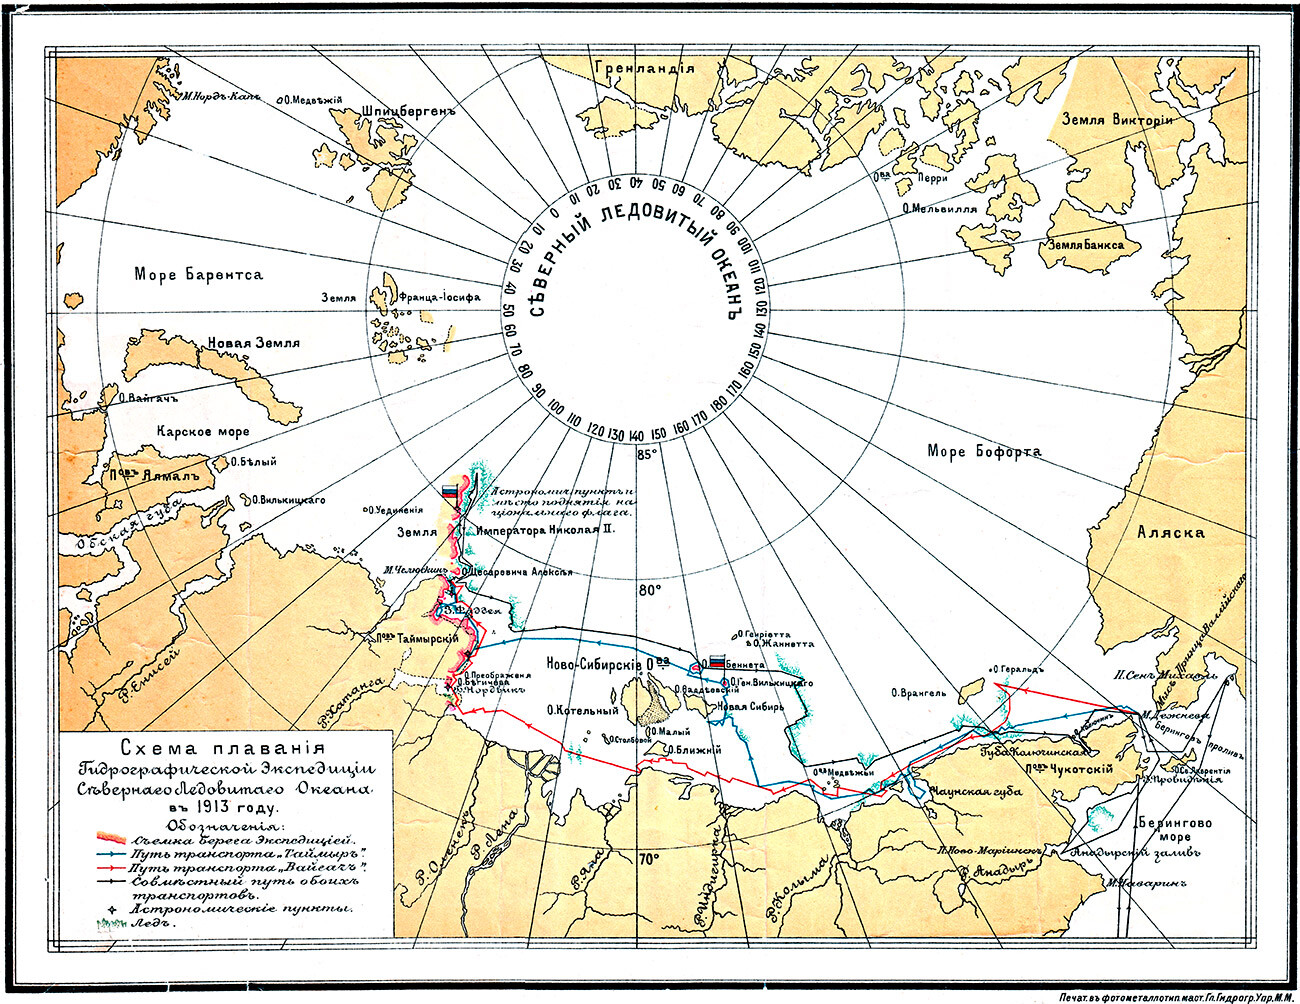 Навигационна схема на хидрографската експедиция на Северния ледовит океан през 1913 г.